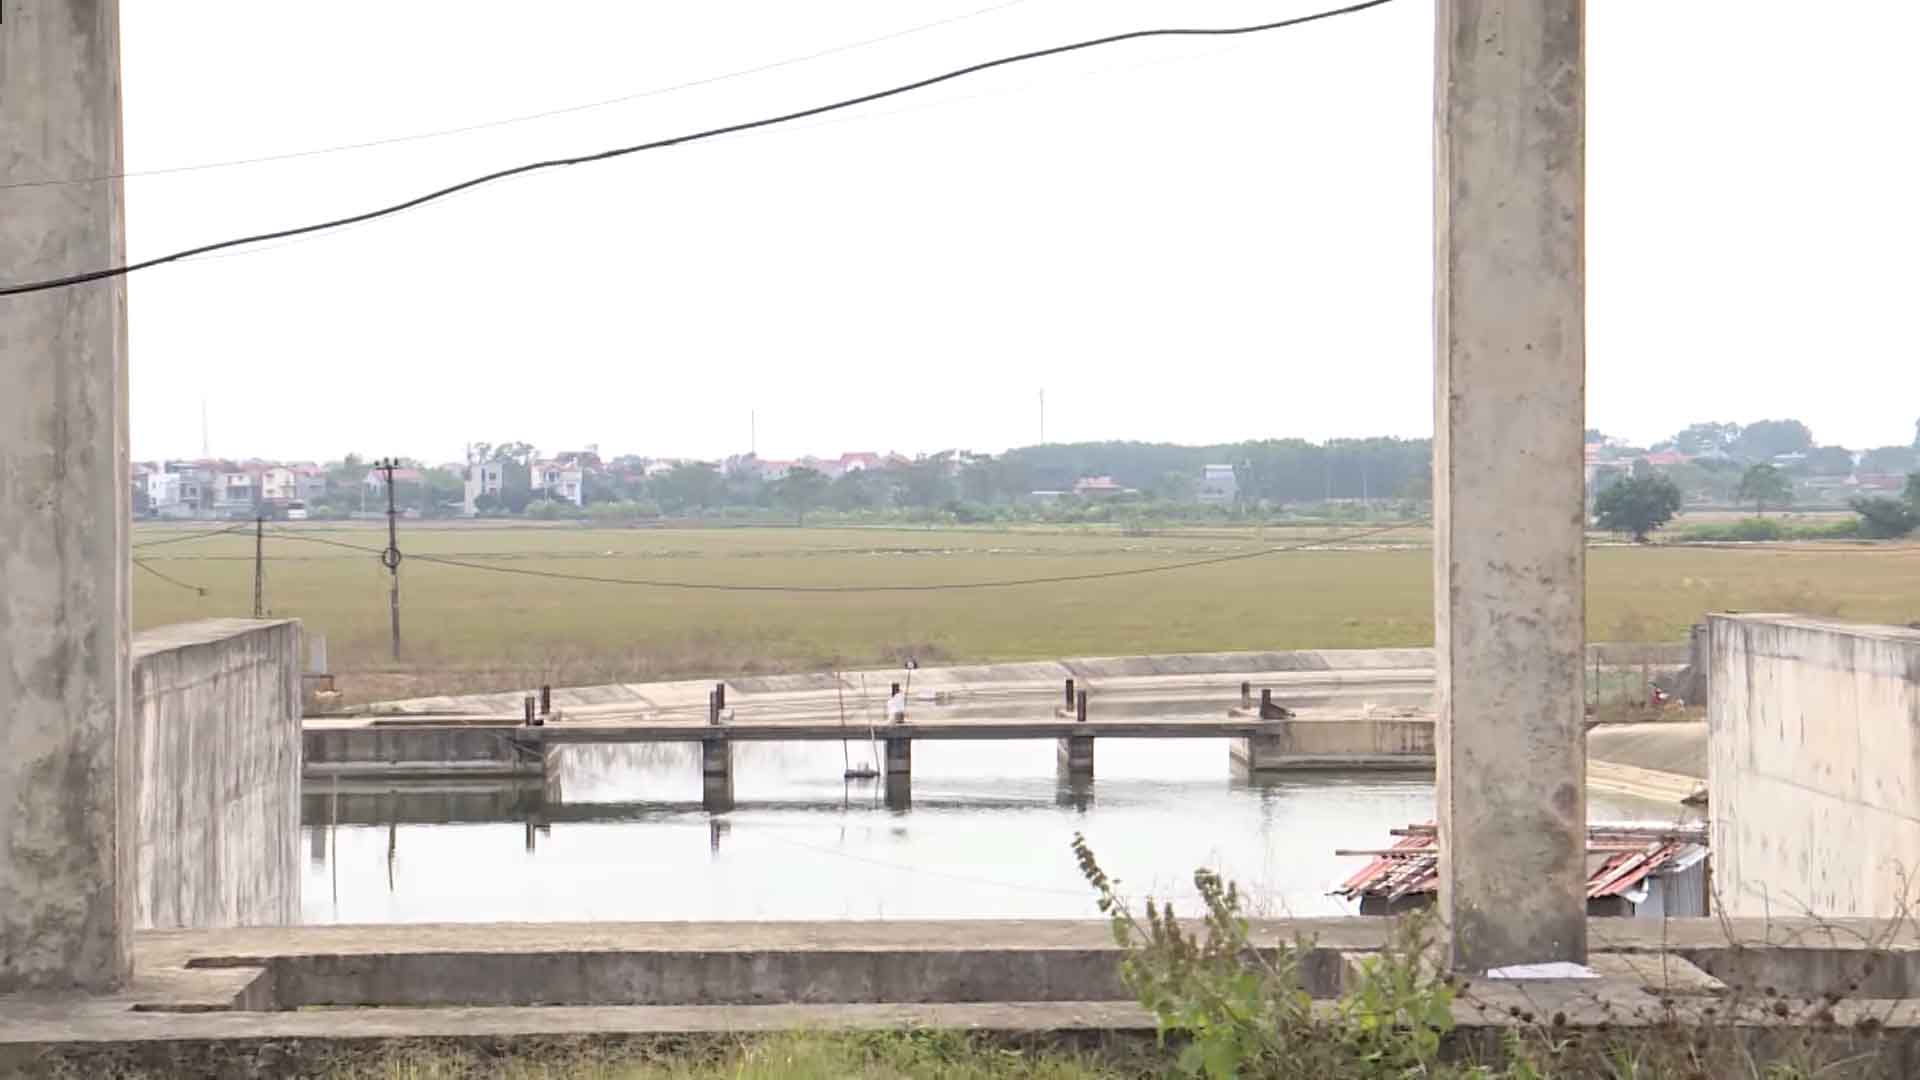 Nói về lý do dự án chậm tiến độ, ông Lê Văn Thuỷ, Phó Giám đốc Công ty xây dựng Châu Cầu, nhà thầu thi công dự án cho biết, nguyên nhân chính là do đường ống nước thô của thành phố Bắc Ninh chạy qua khu vực nhà máy và bể xả của dự án hiện vẫn chưa di dời được.  